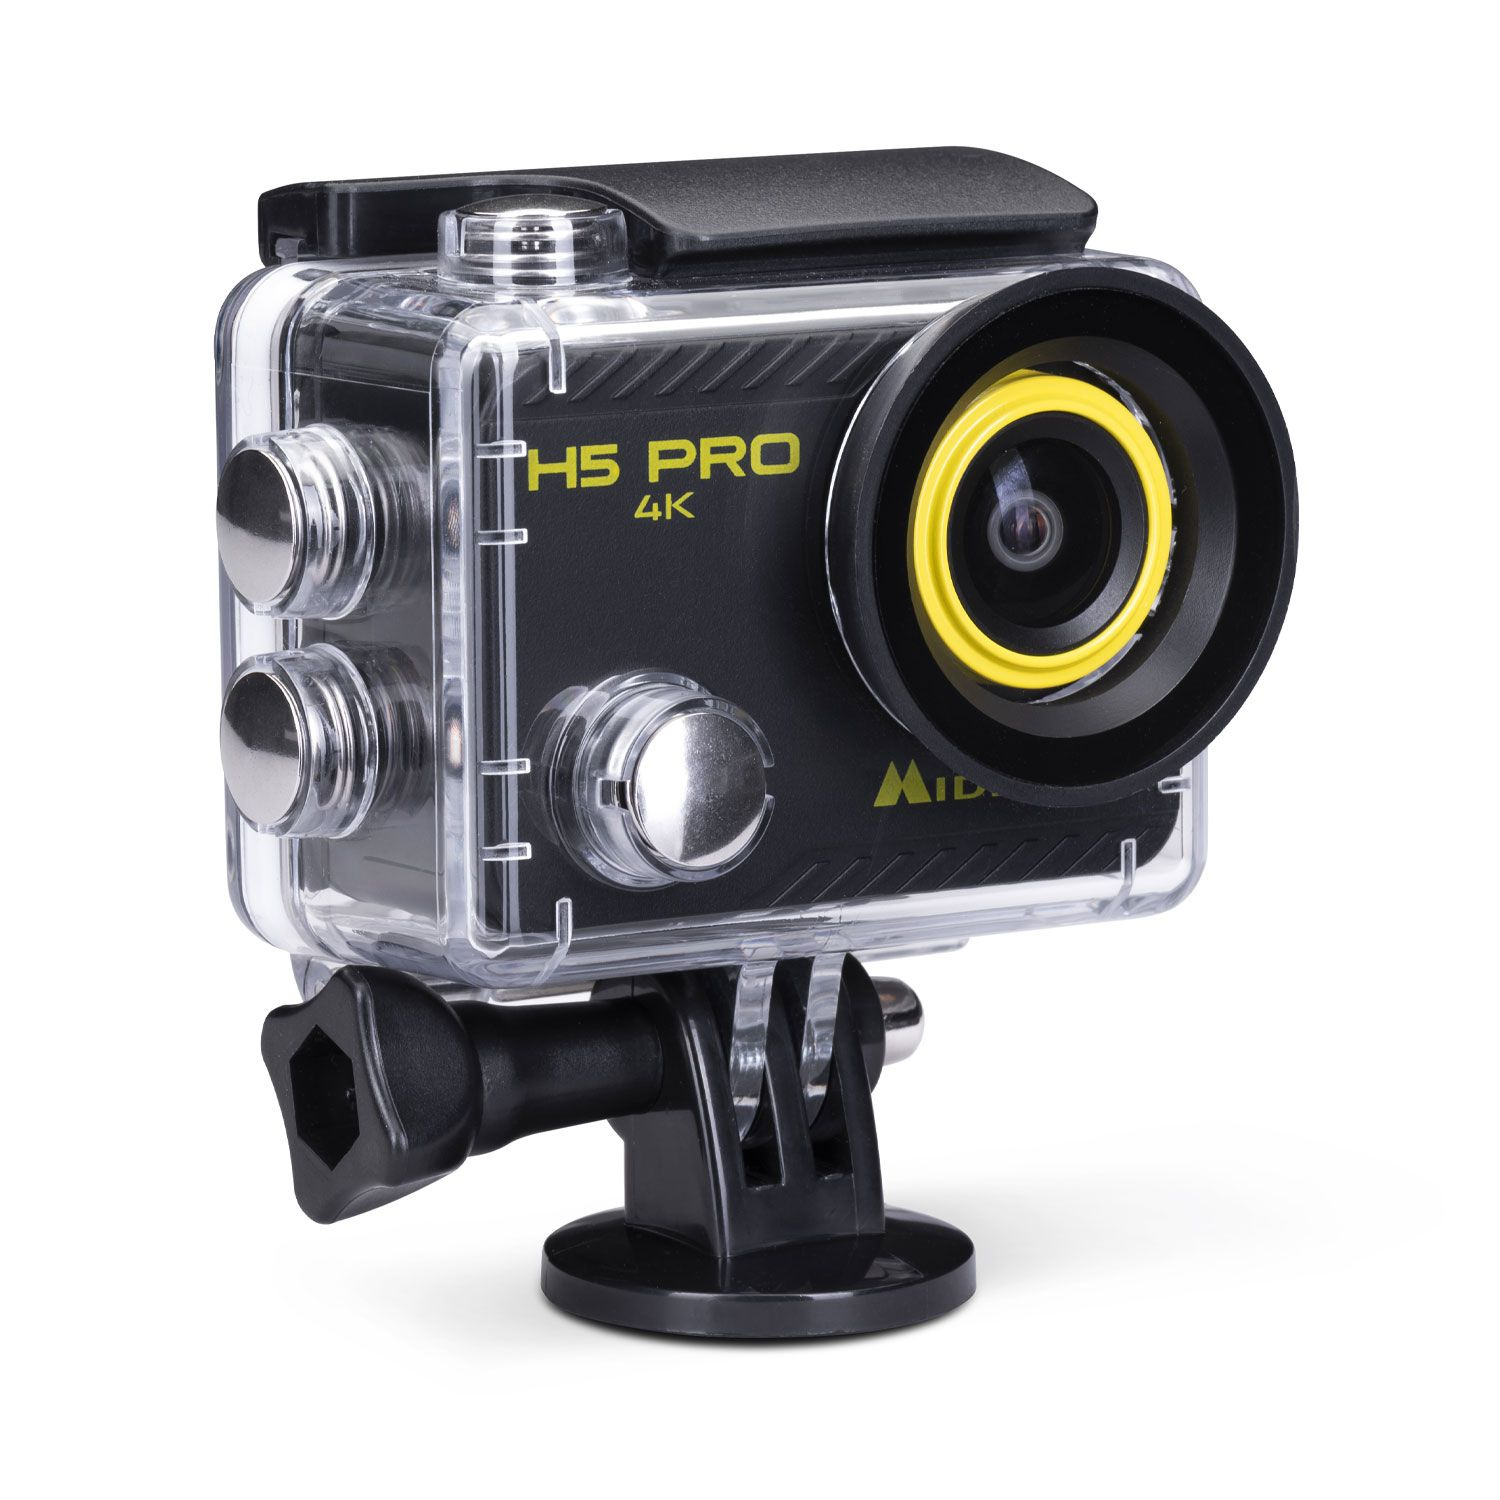 ACCESSOIRE - Midland, nouvelle caméra H180 pour filmer au grand angle -  Mototribu